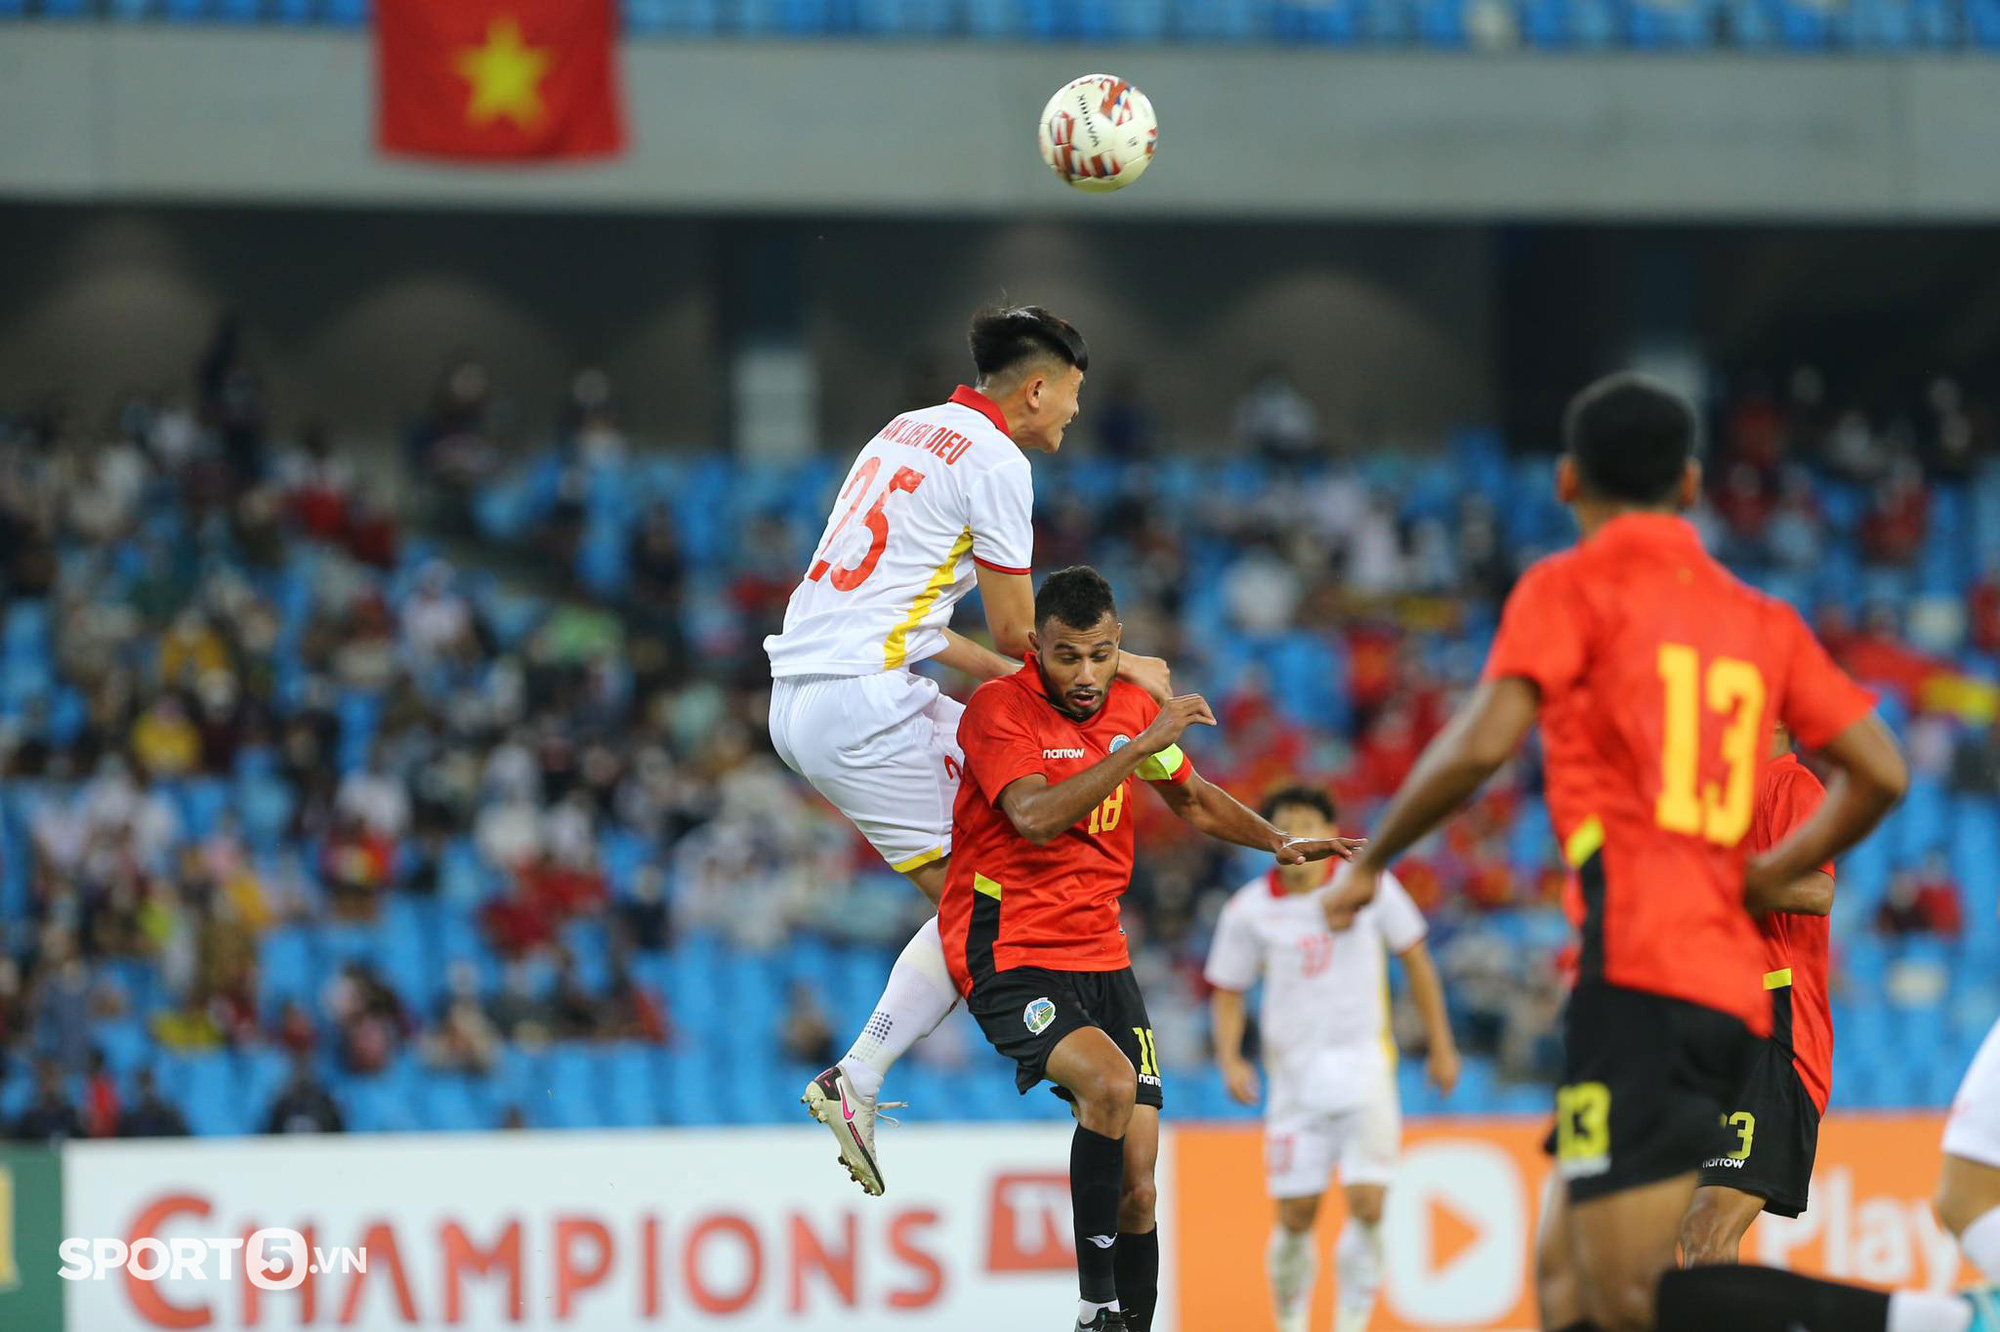 TUYỆT VỜI!!! Vượt khó khăn chưa từng có trong lịch sử, U23 Việt Nam vào chung kết đấu Thái Lan sau loạt luân lưu - Ảnh 4.